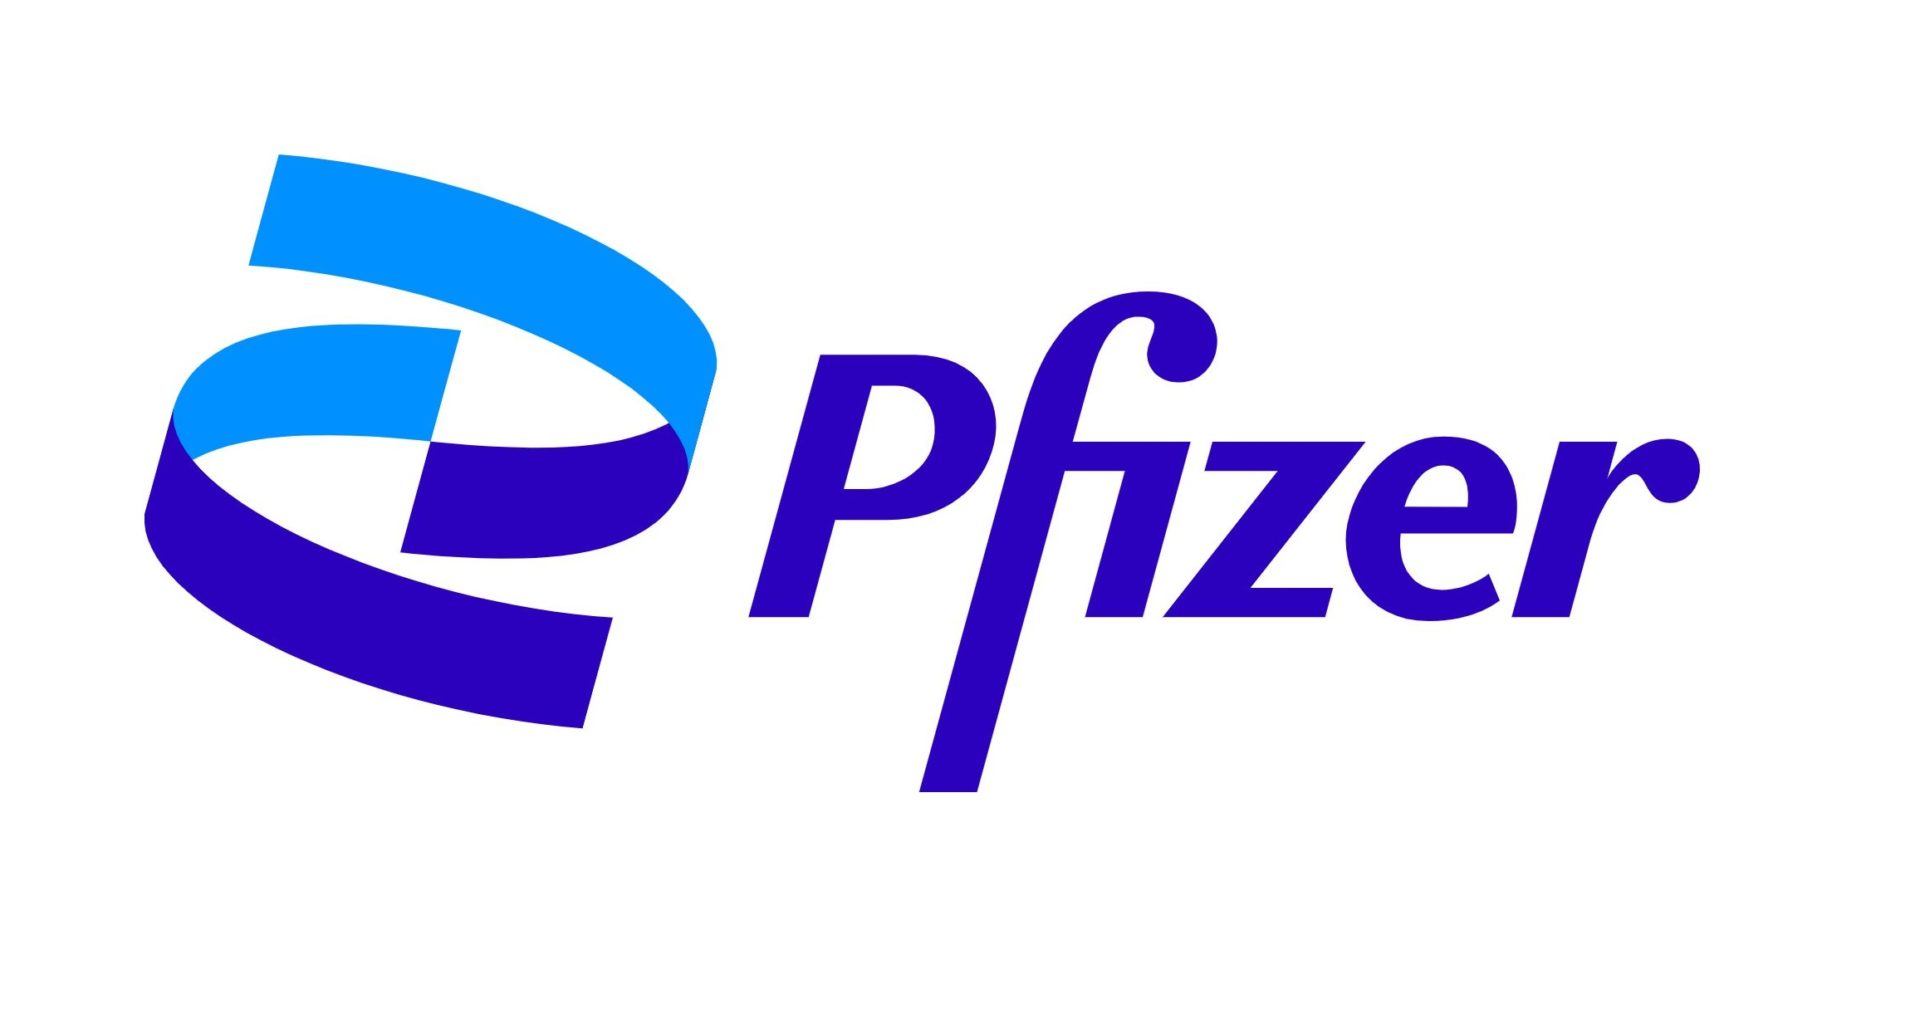 อย.สหรัฐฯ อนุมัติการใช้ Pfizer อย่างเต็มรูปแบบ (Full approval) ในกลุ่มเด็กอายุ 12 – 15 ปีแล้ว